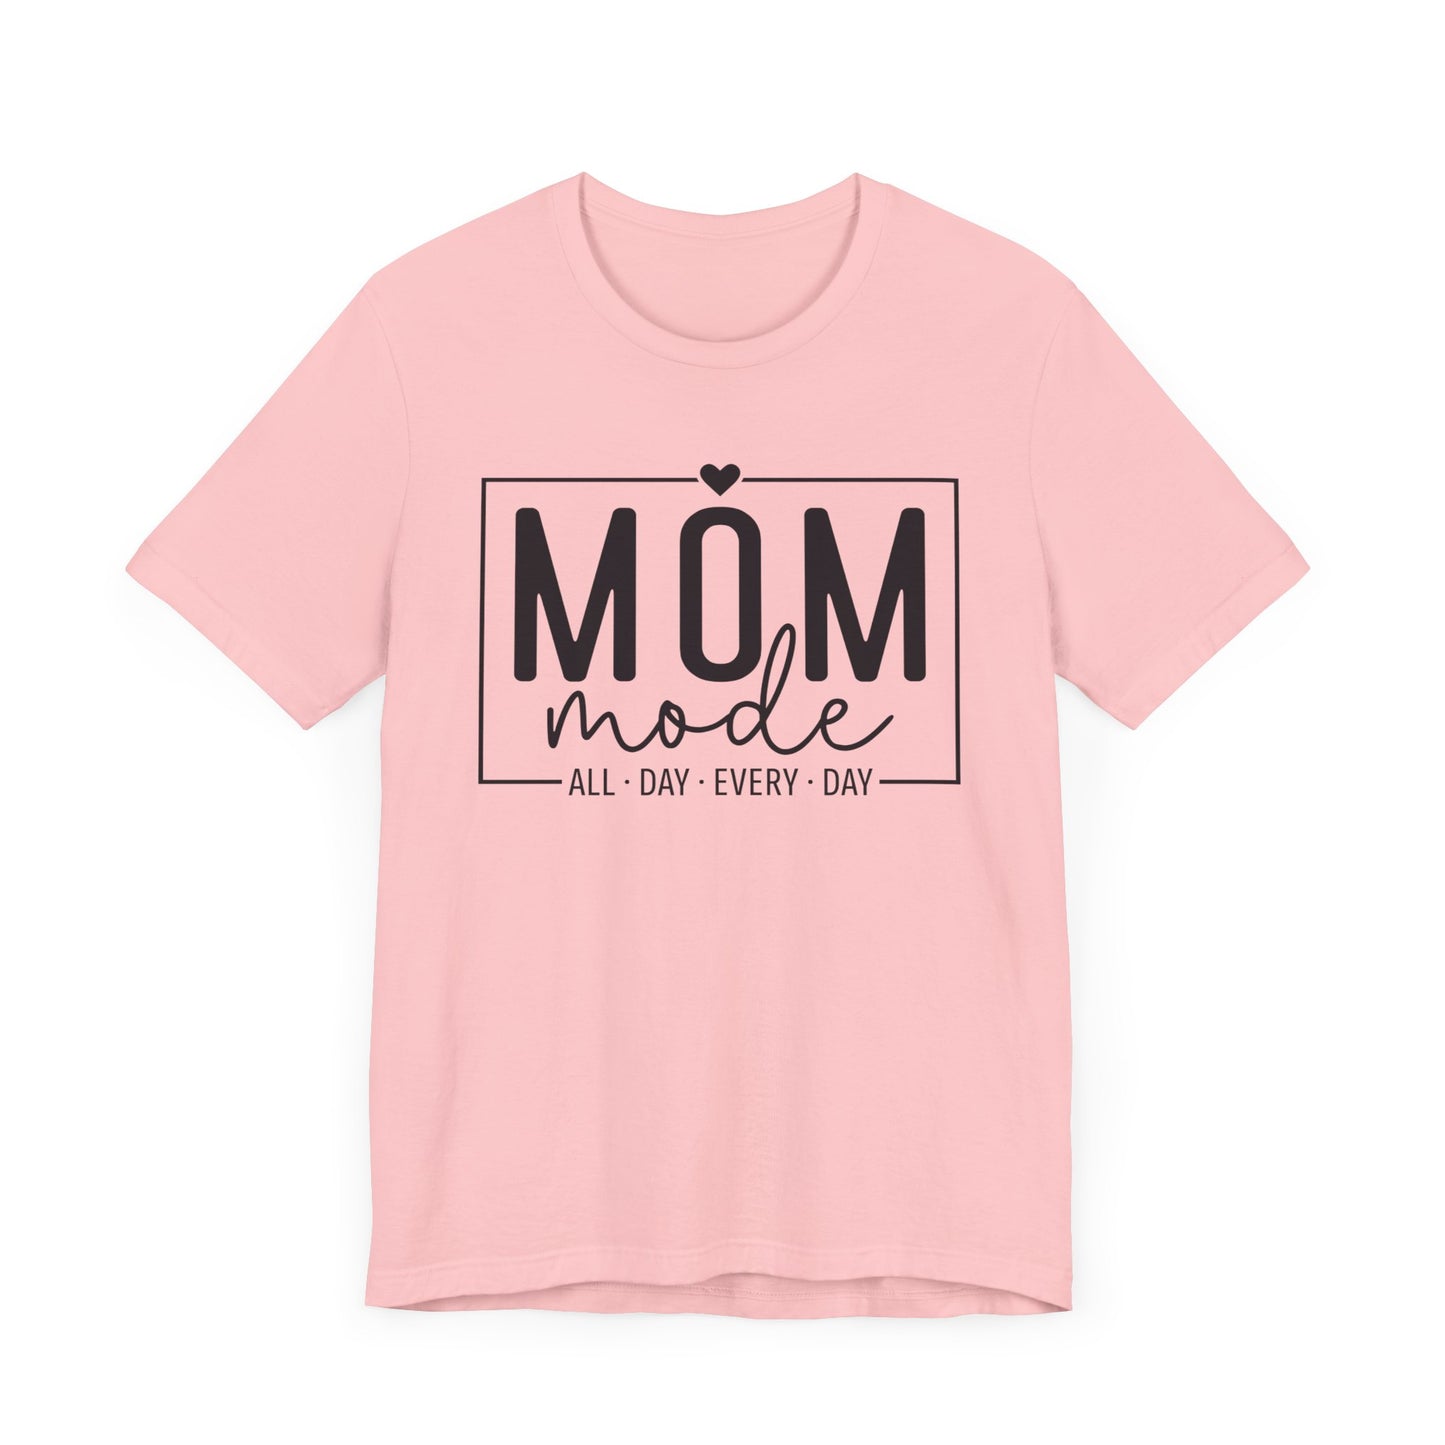 Mom Mode - Jersey Short Sleeve T-Shirt